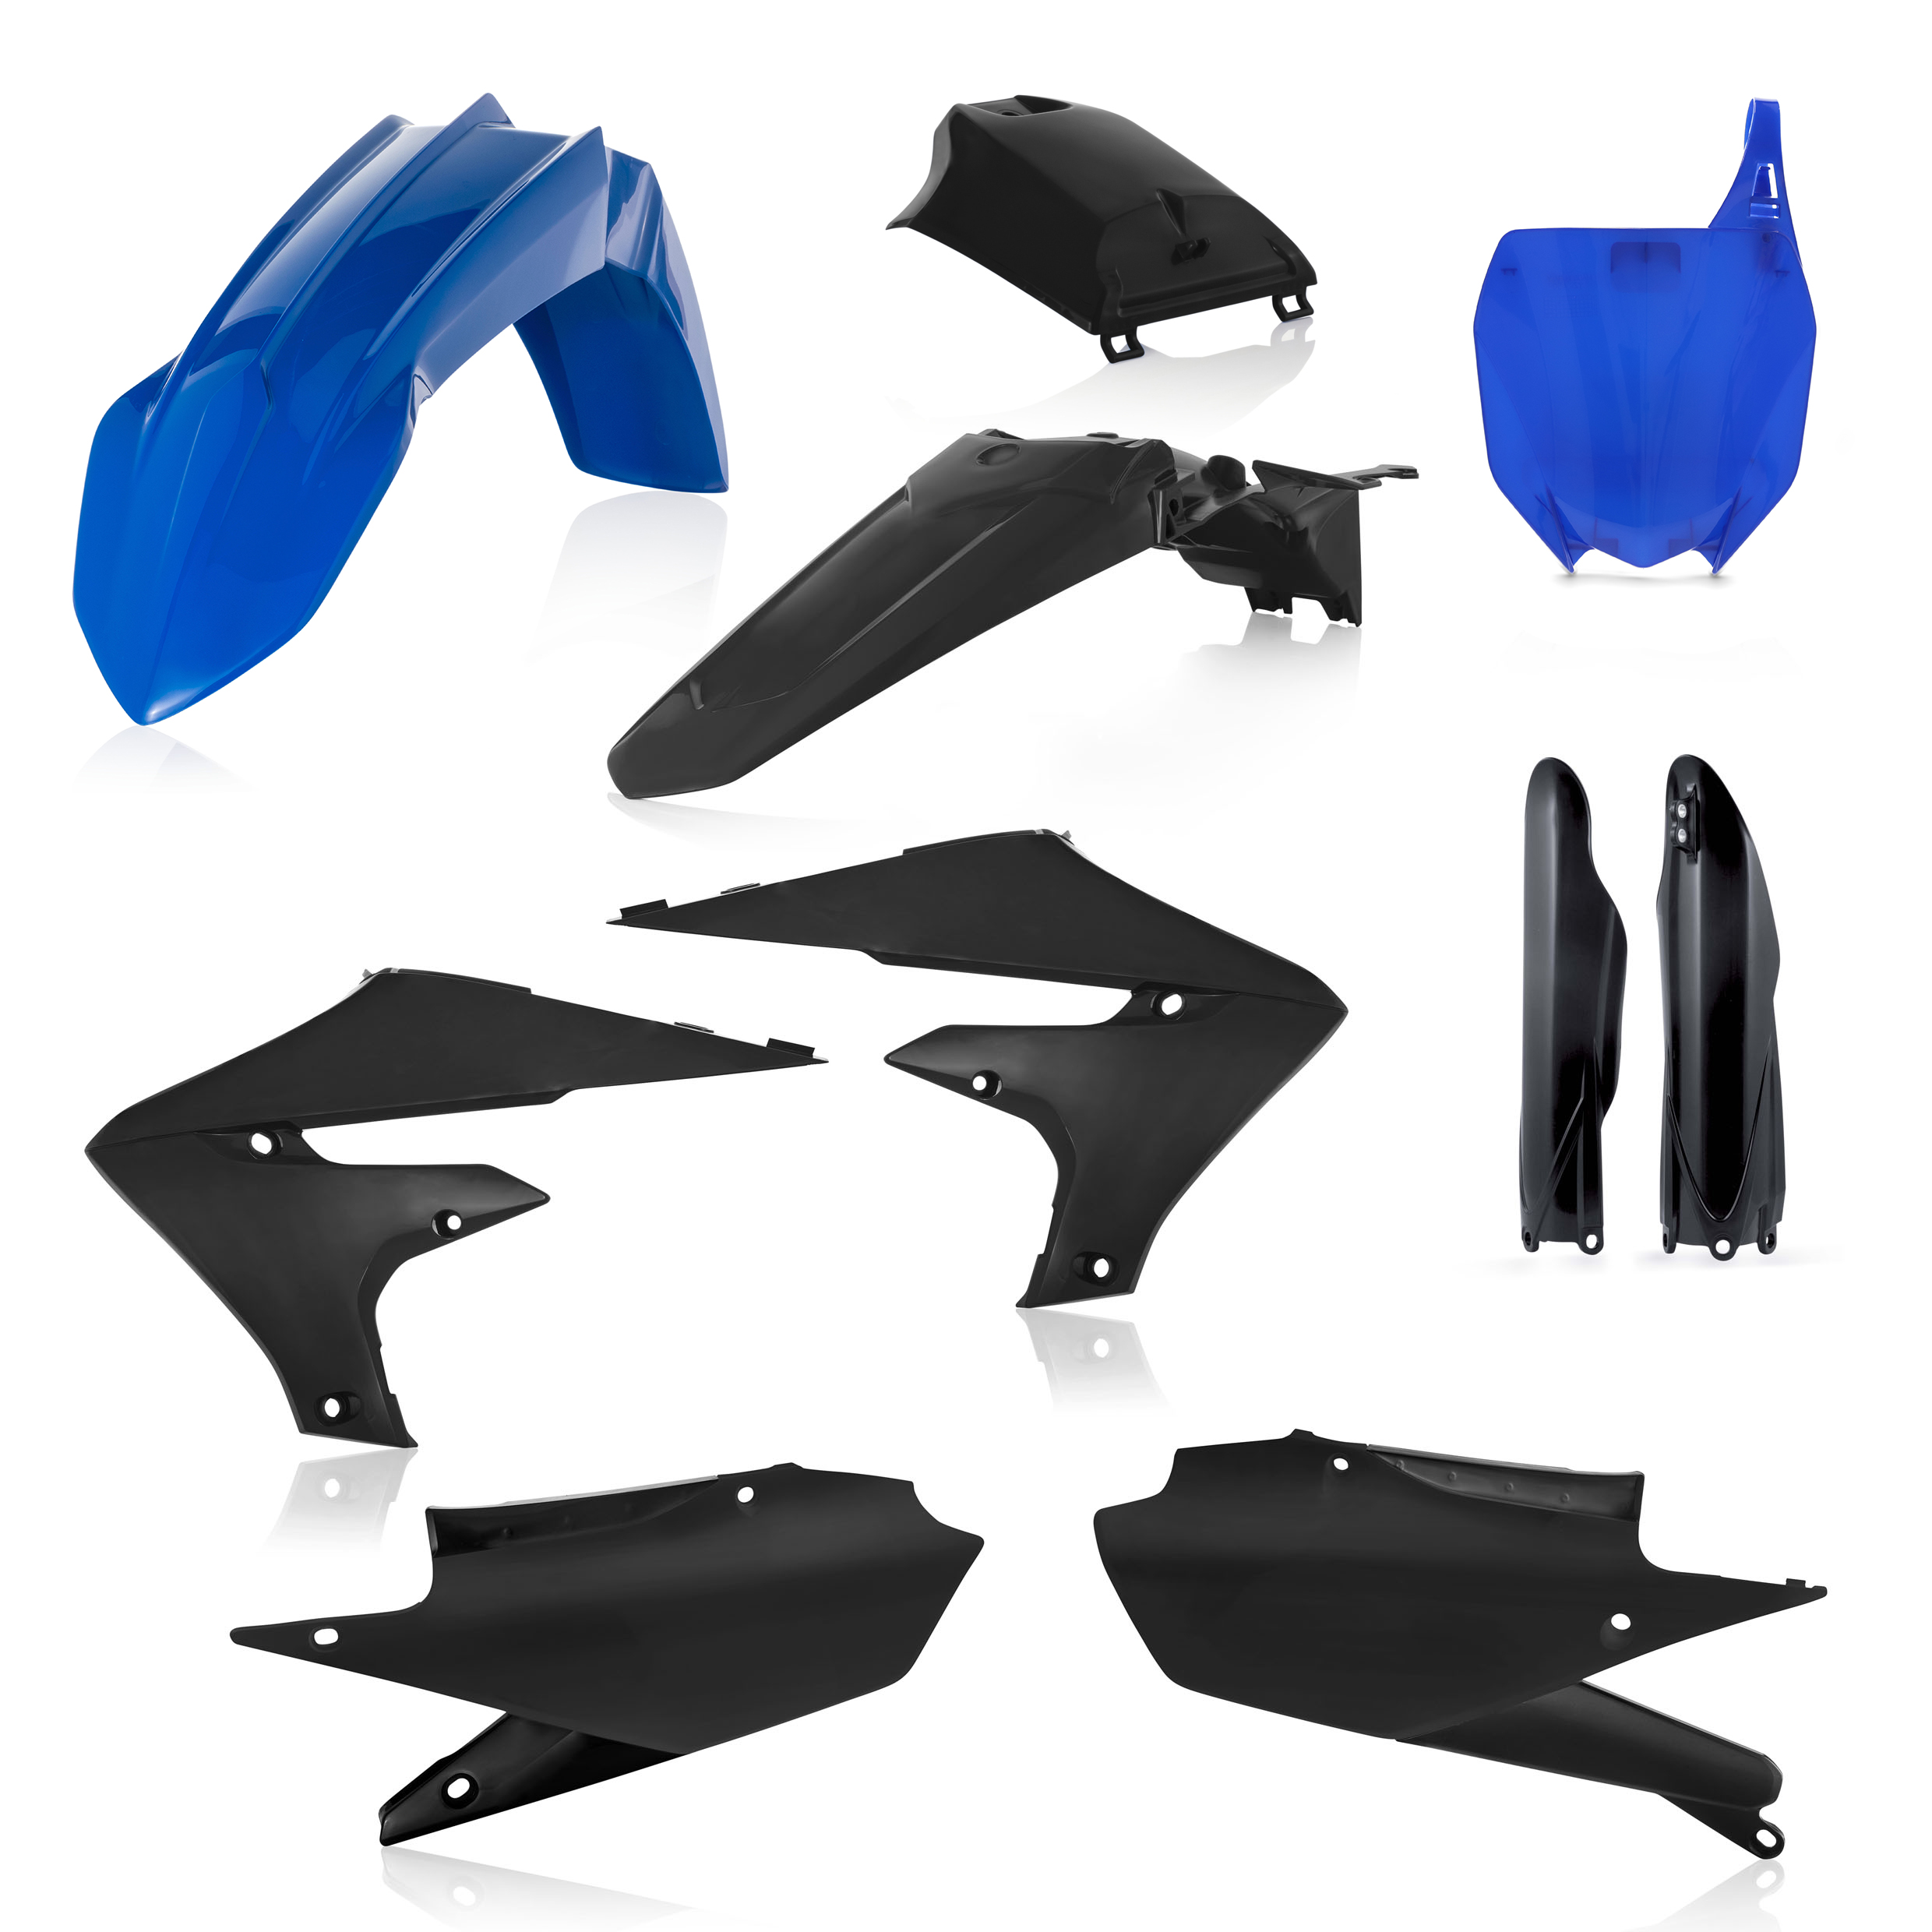 Plastikteile für deine Yamaha YZ 250/450 in schwarz-blau bestehend aus Kotflügel vorn Kotflügel hinten Kühlerspoiler Seitenteile Gabelschützer Startnummerntafel Air Box Cover